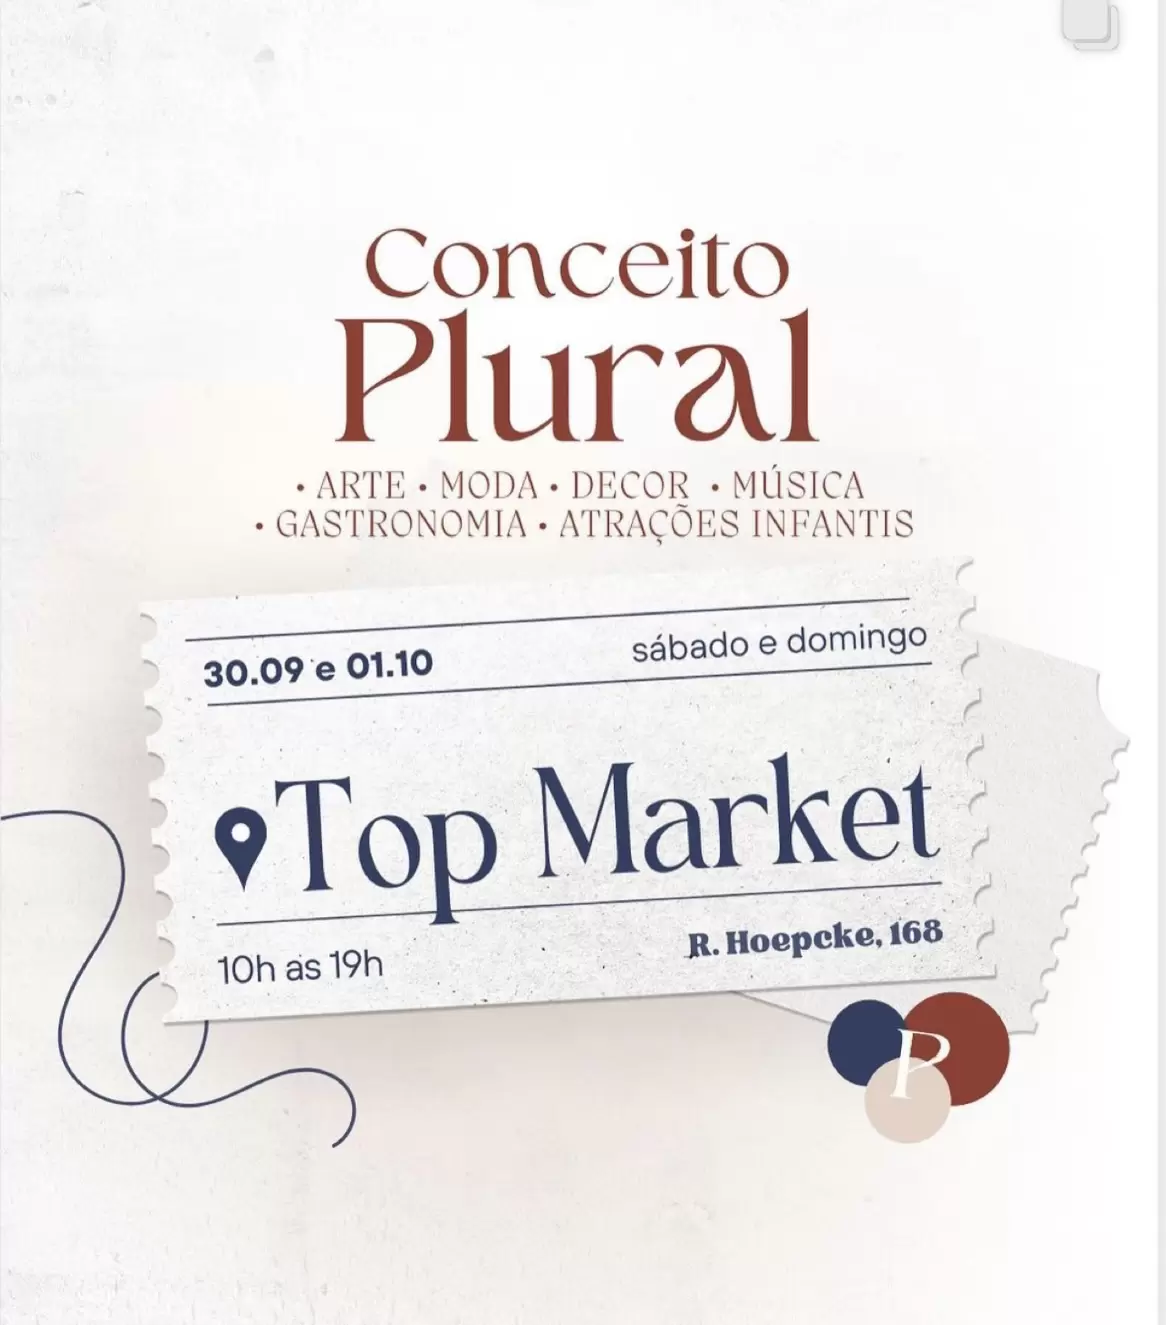 Top Market apresenta sua 2º Edição da Feira Conceito Plural - Clube do  Champanhe